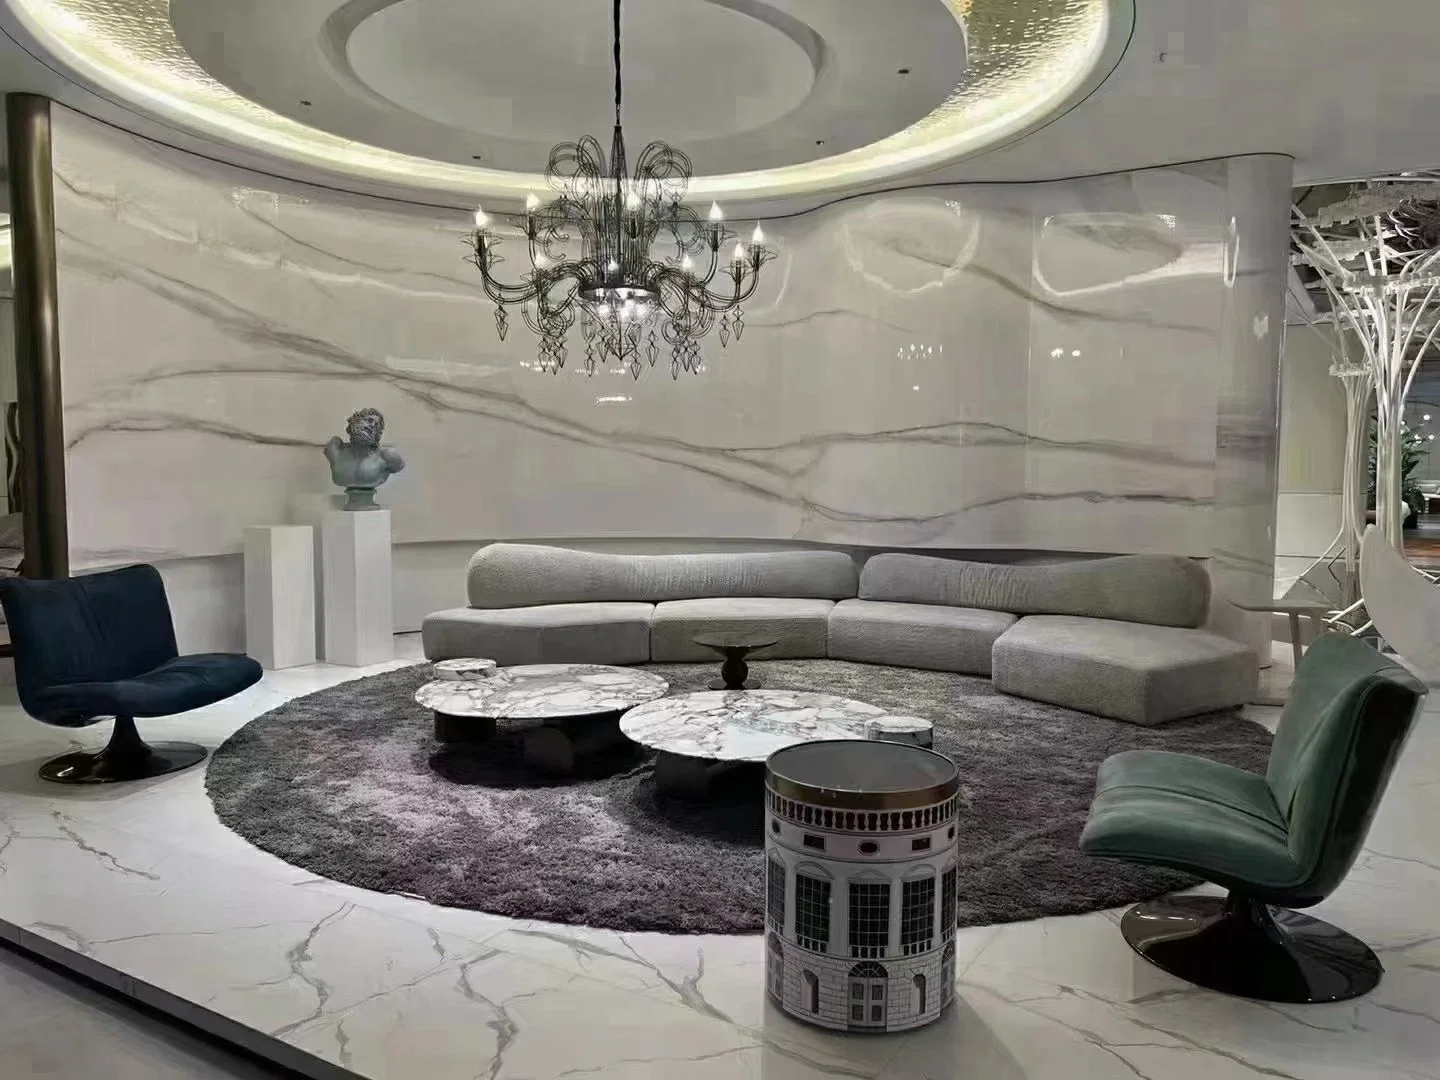 Ocio moderno Mobiliario de Casa tela asientos Contemporáneo sofá para vivir Habitación Sofá